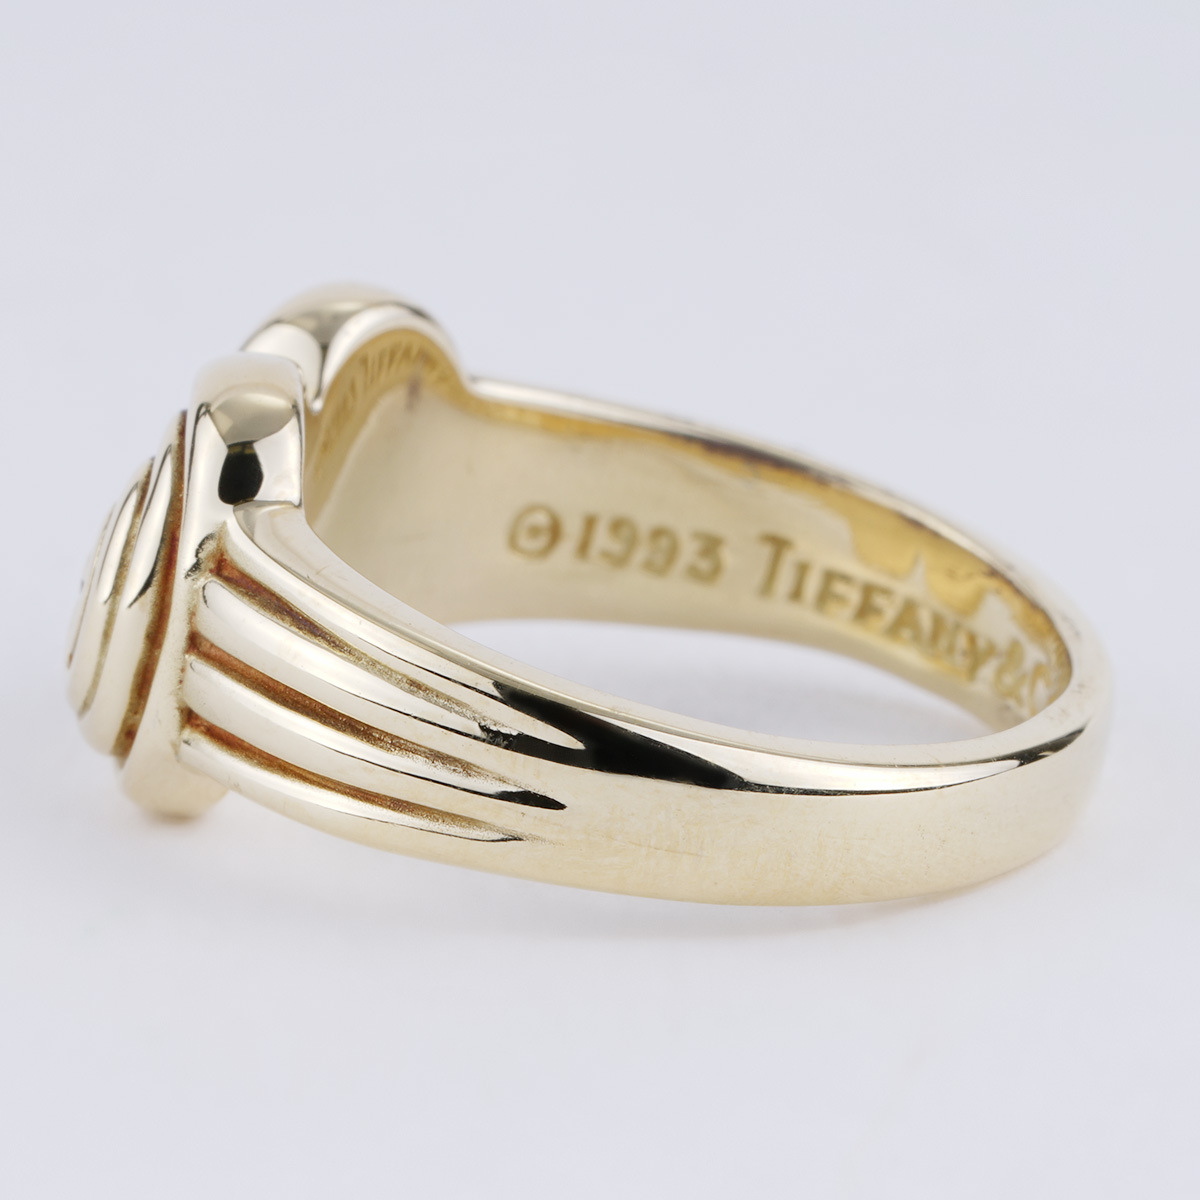 Tiffany & Co. Platinum Diamond Engagement Ring - Size 5.75 - Ruby Lane